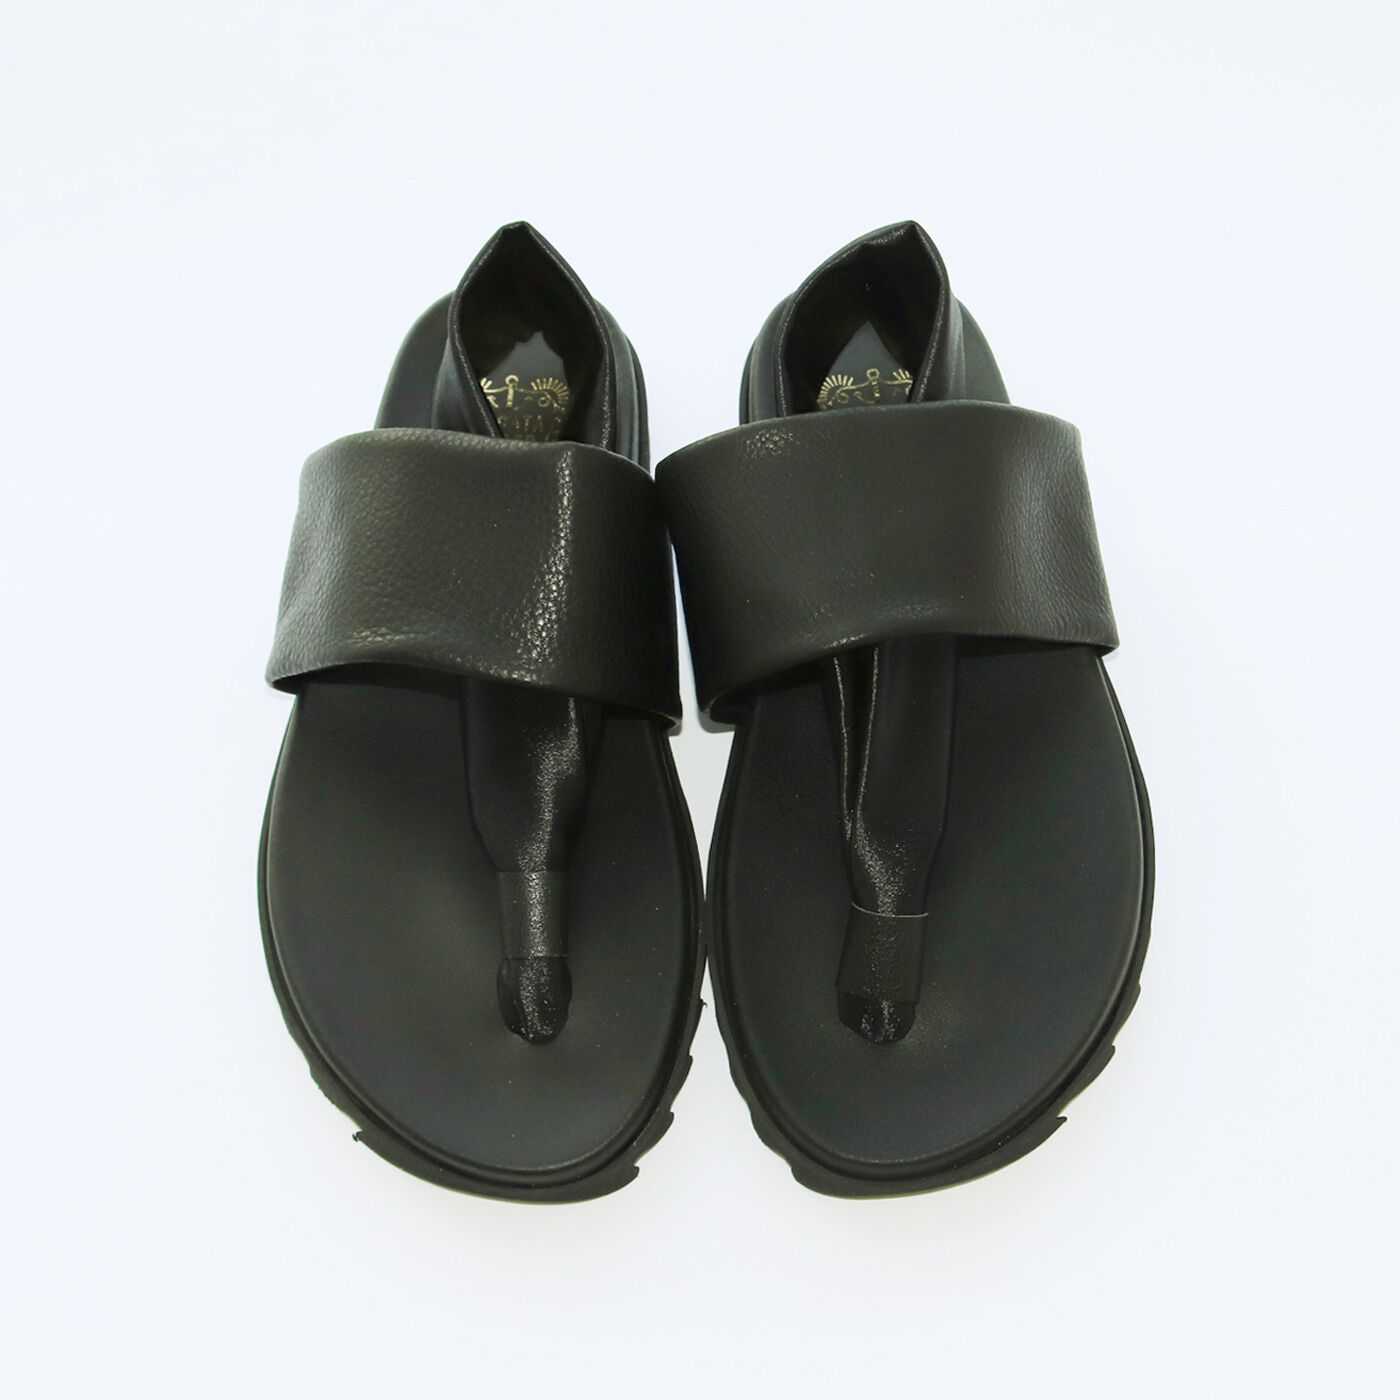 ＆Stories|靴デザイナーの理想で仕上げた 職人本革のメンズトングシューズ〈ブラック〉|カラーは、どんなコーデにも合う〈ブラック〉。